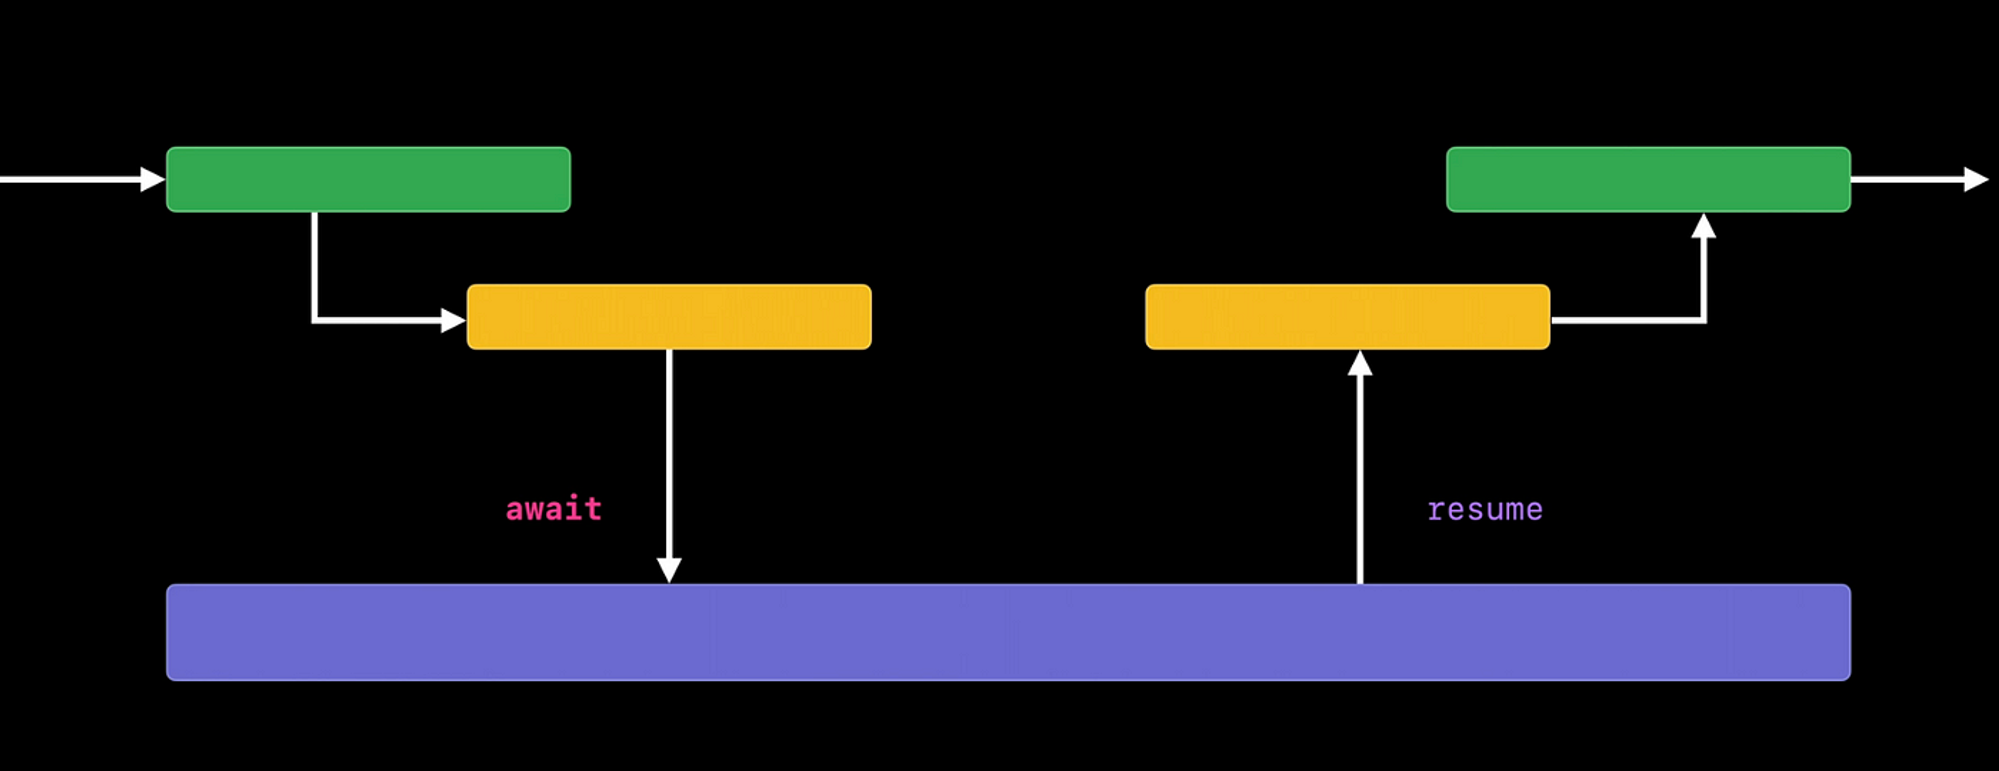 Diagram explaining How async/await works in Swift